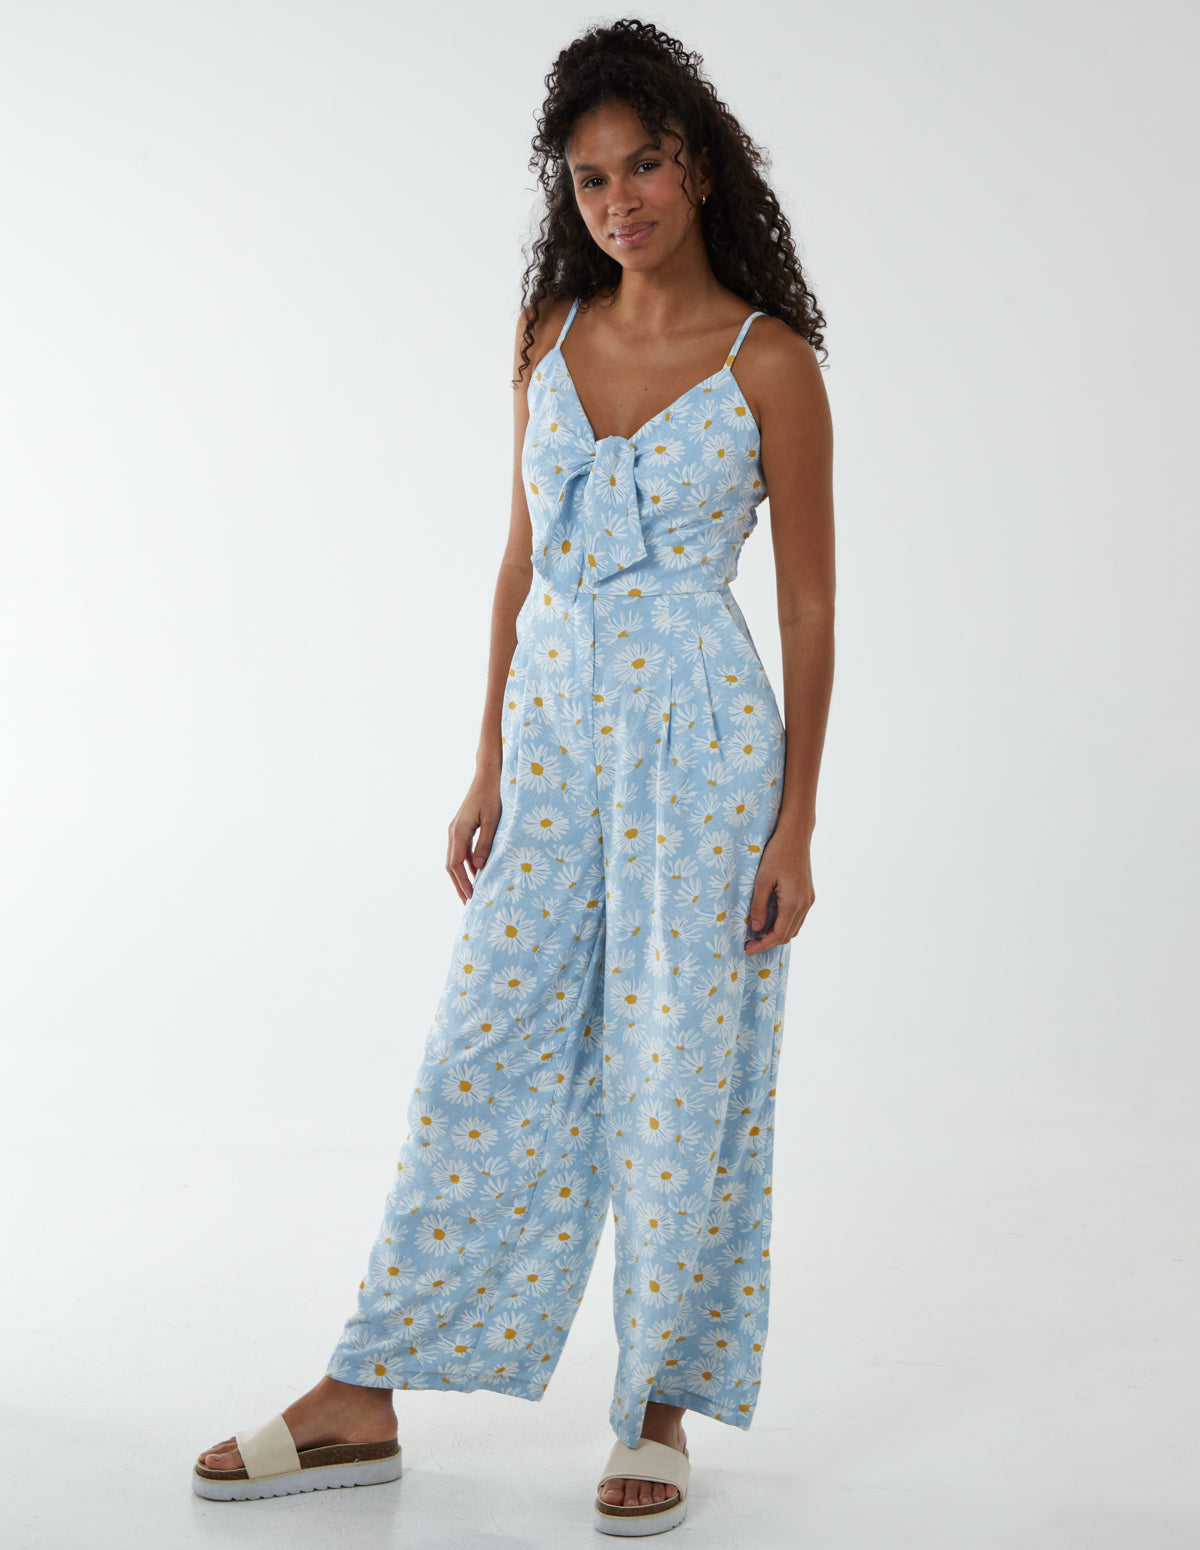 Daisy Print Tie Front Jumpsuit - 10 / BLUE